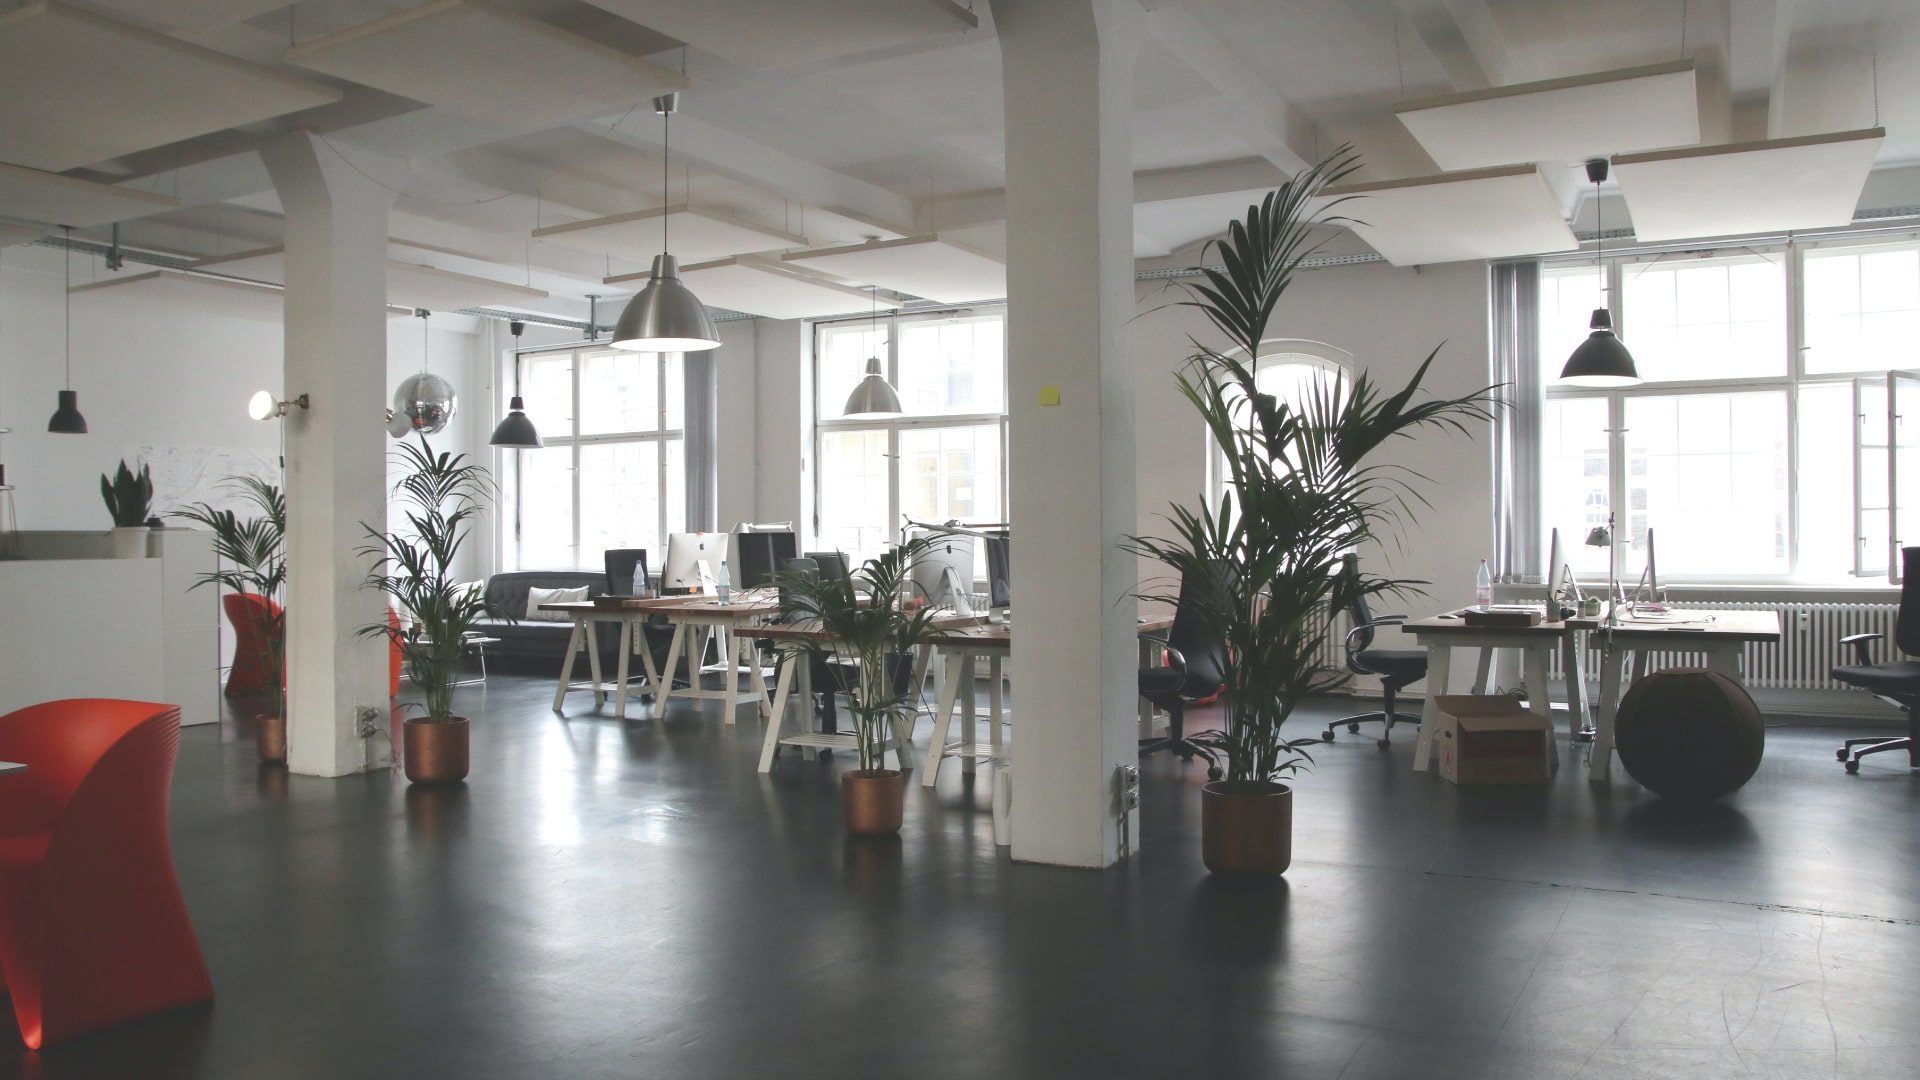 Come il design degli uffici migliora la produttività